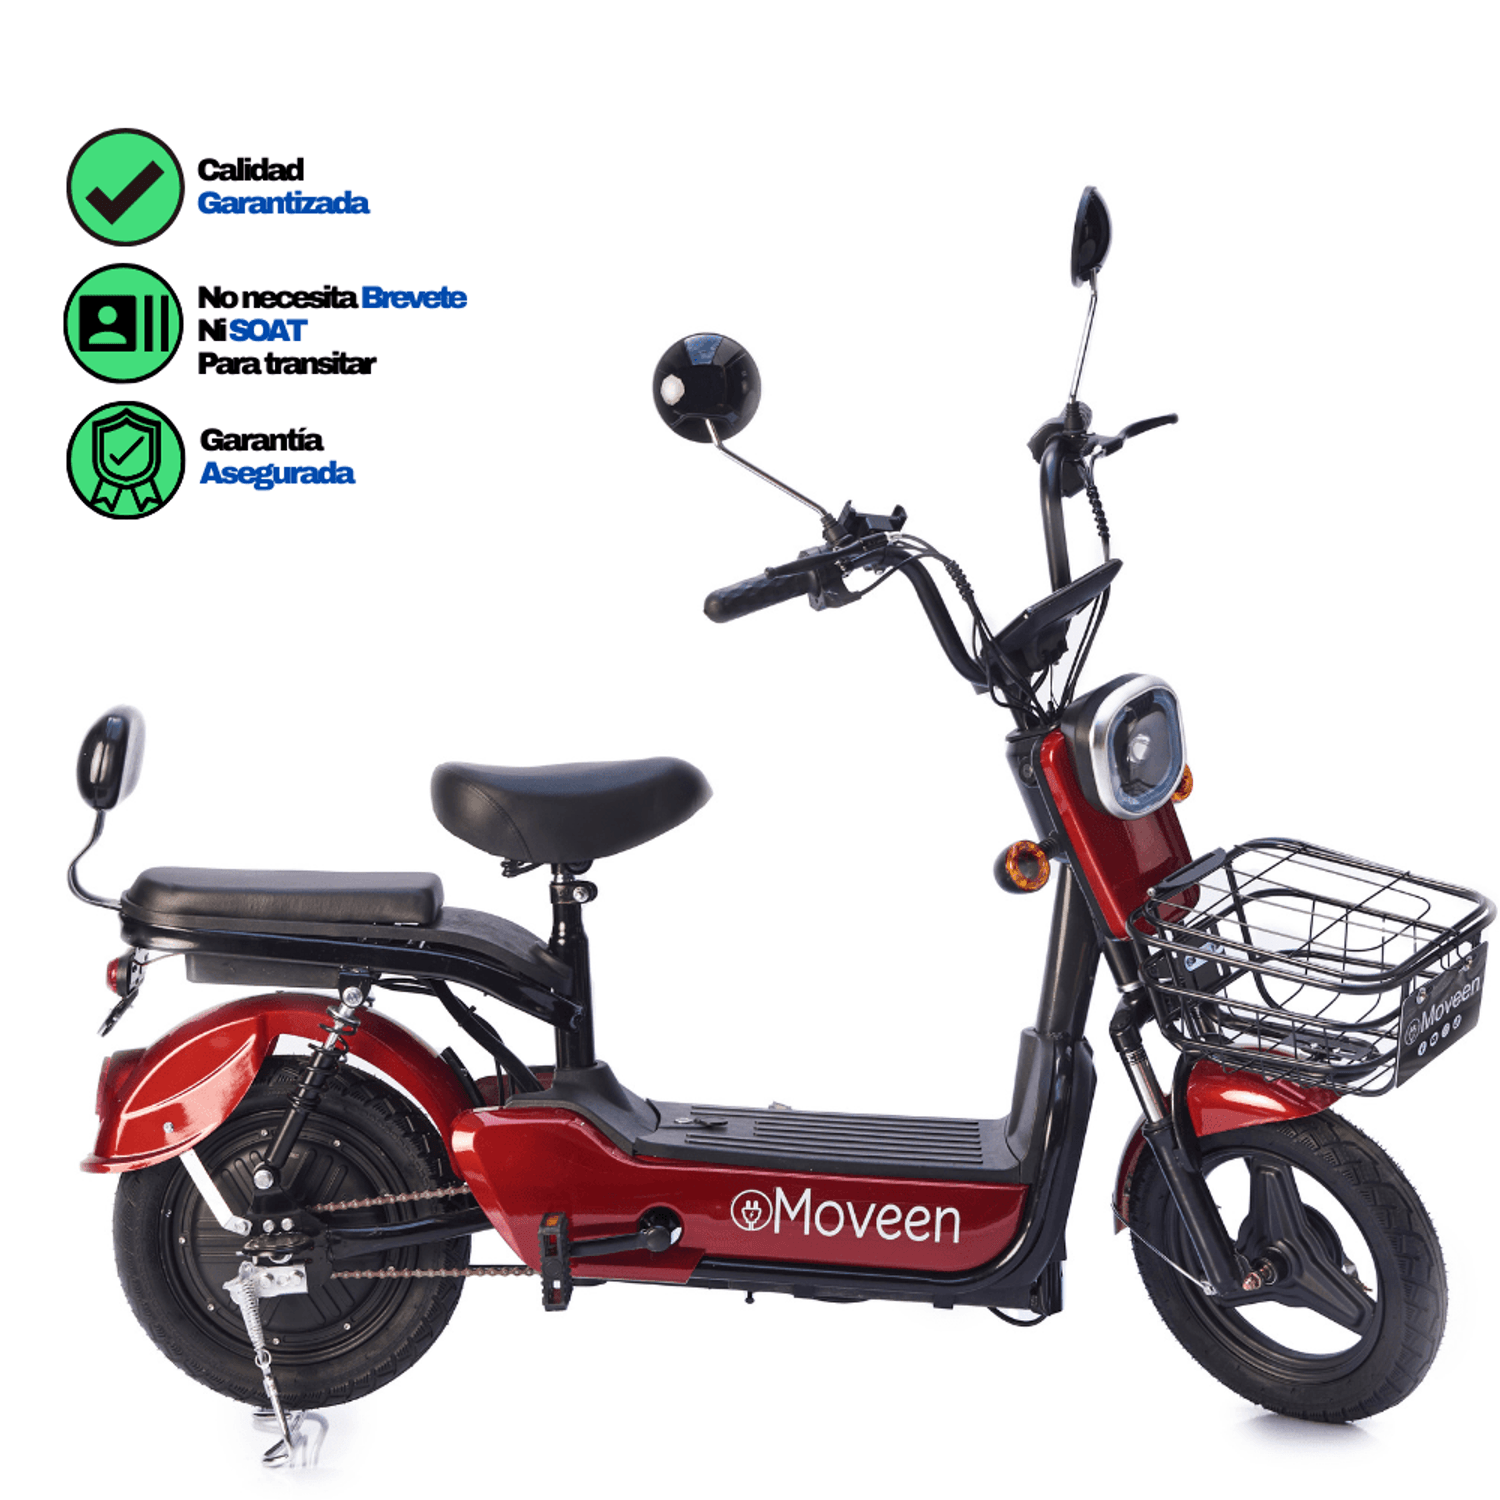 Candado con Alarma Antirrobo Para Moto Scooter o Bicicleta I Oechsle -  Oechsle